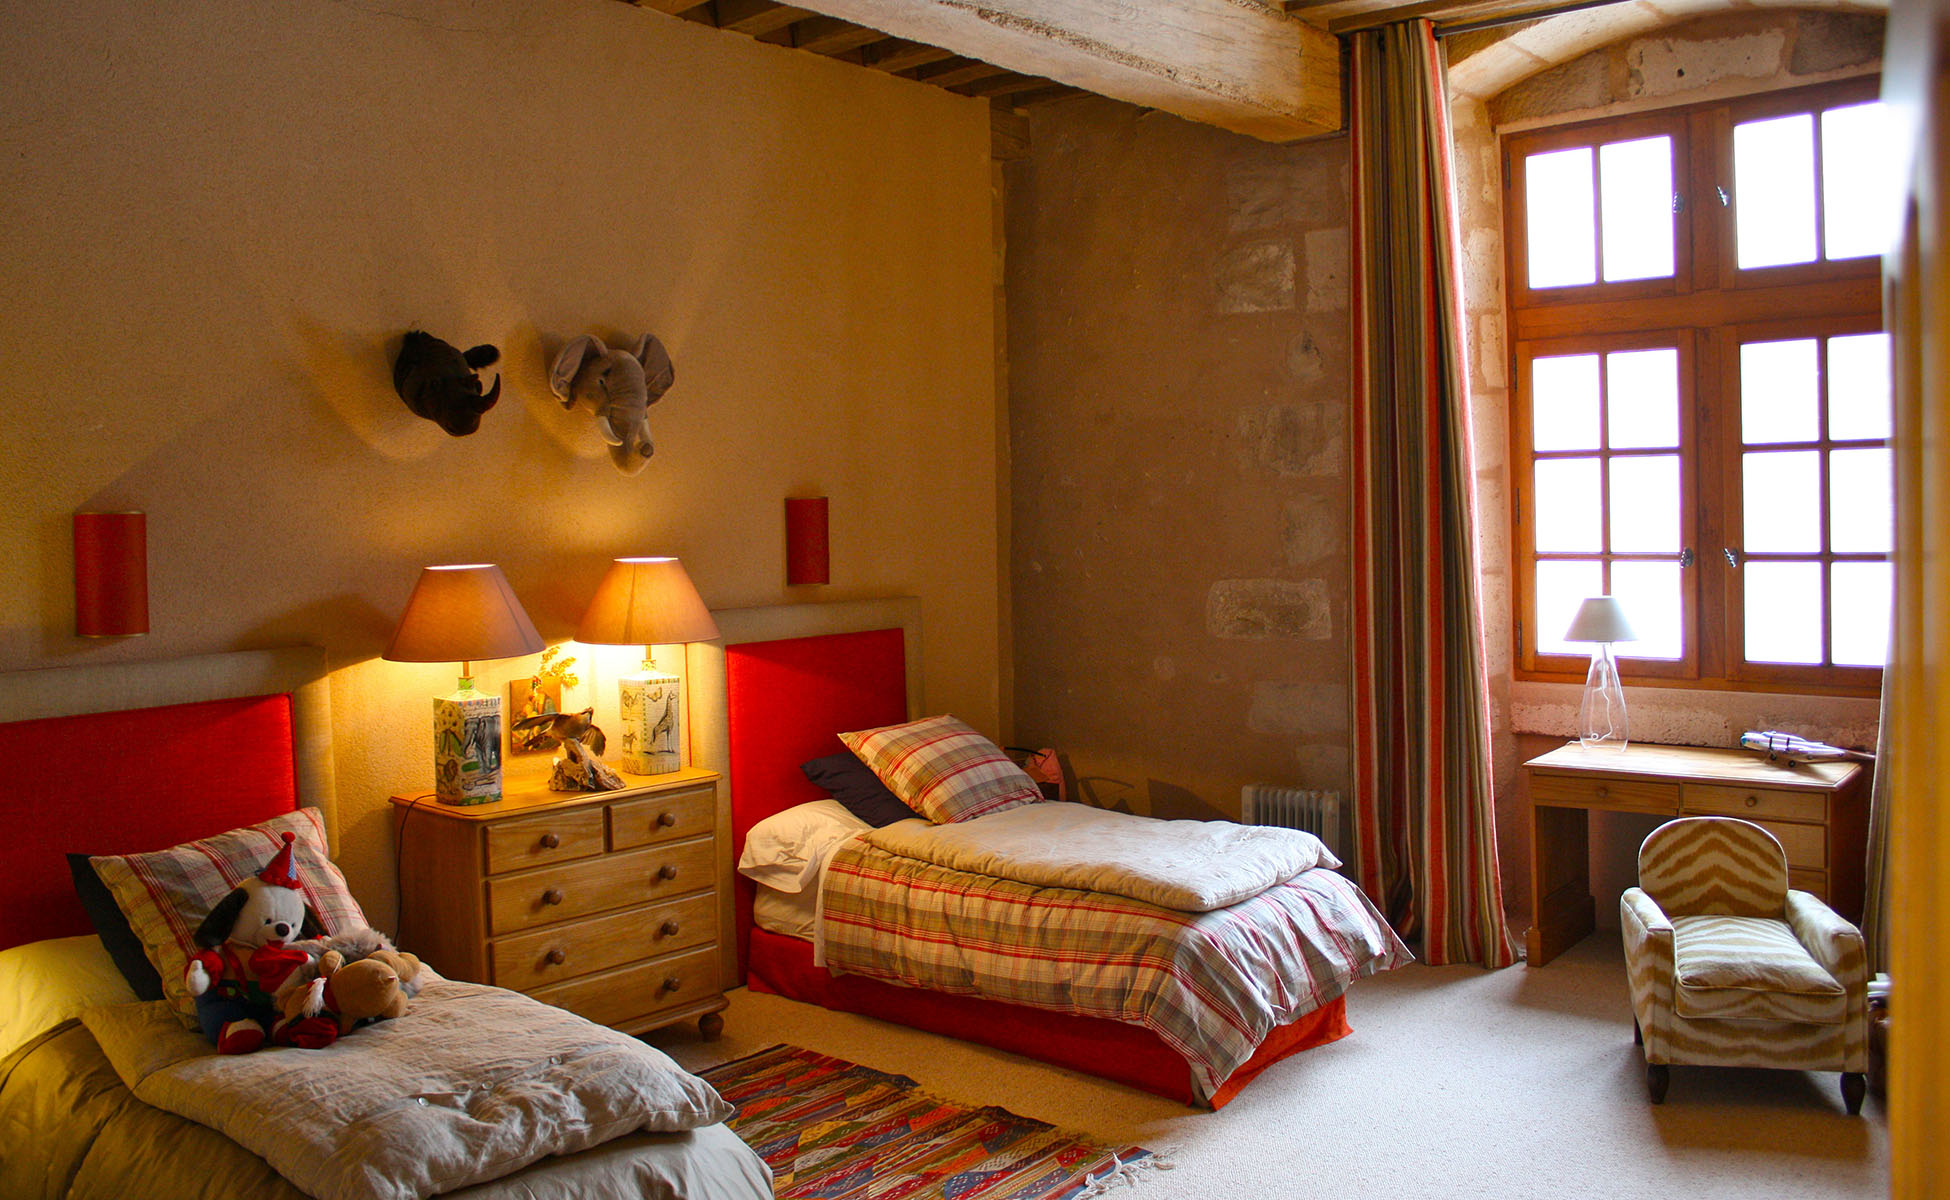 Lovelydays luxury service apartment rental - Île-de-France - Paris - Chateau de Boigneville - Lovelysuite - 7 bedrooms - 7 bathrooms - Single bed - 6e025954eb23 - Lovelydays